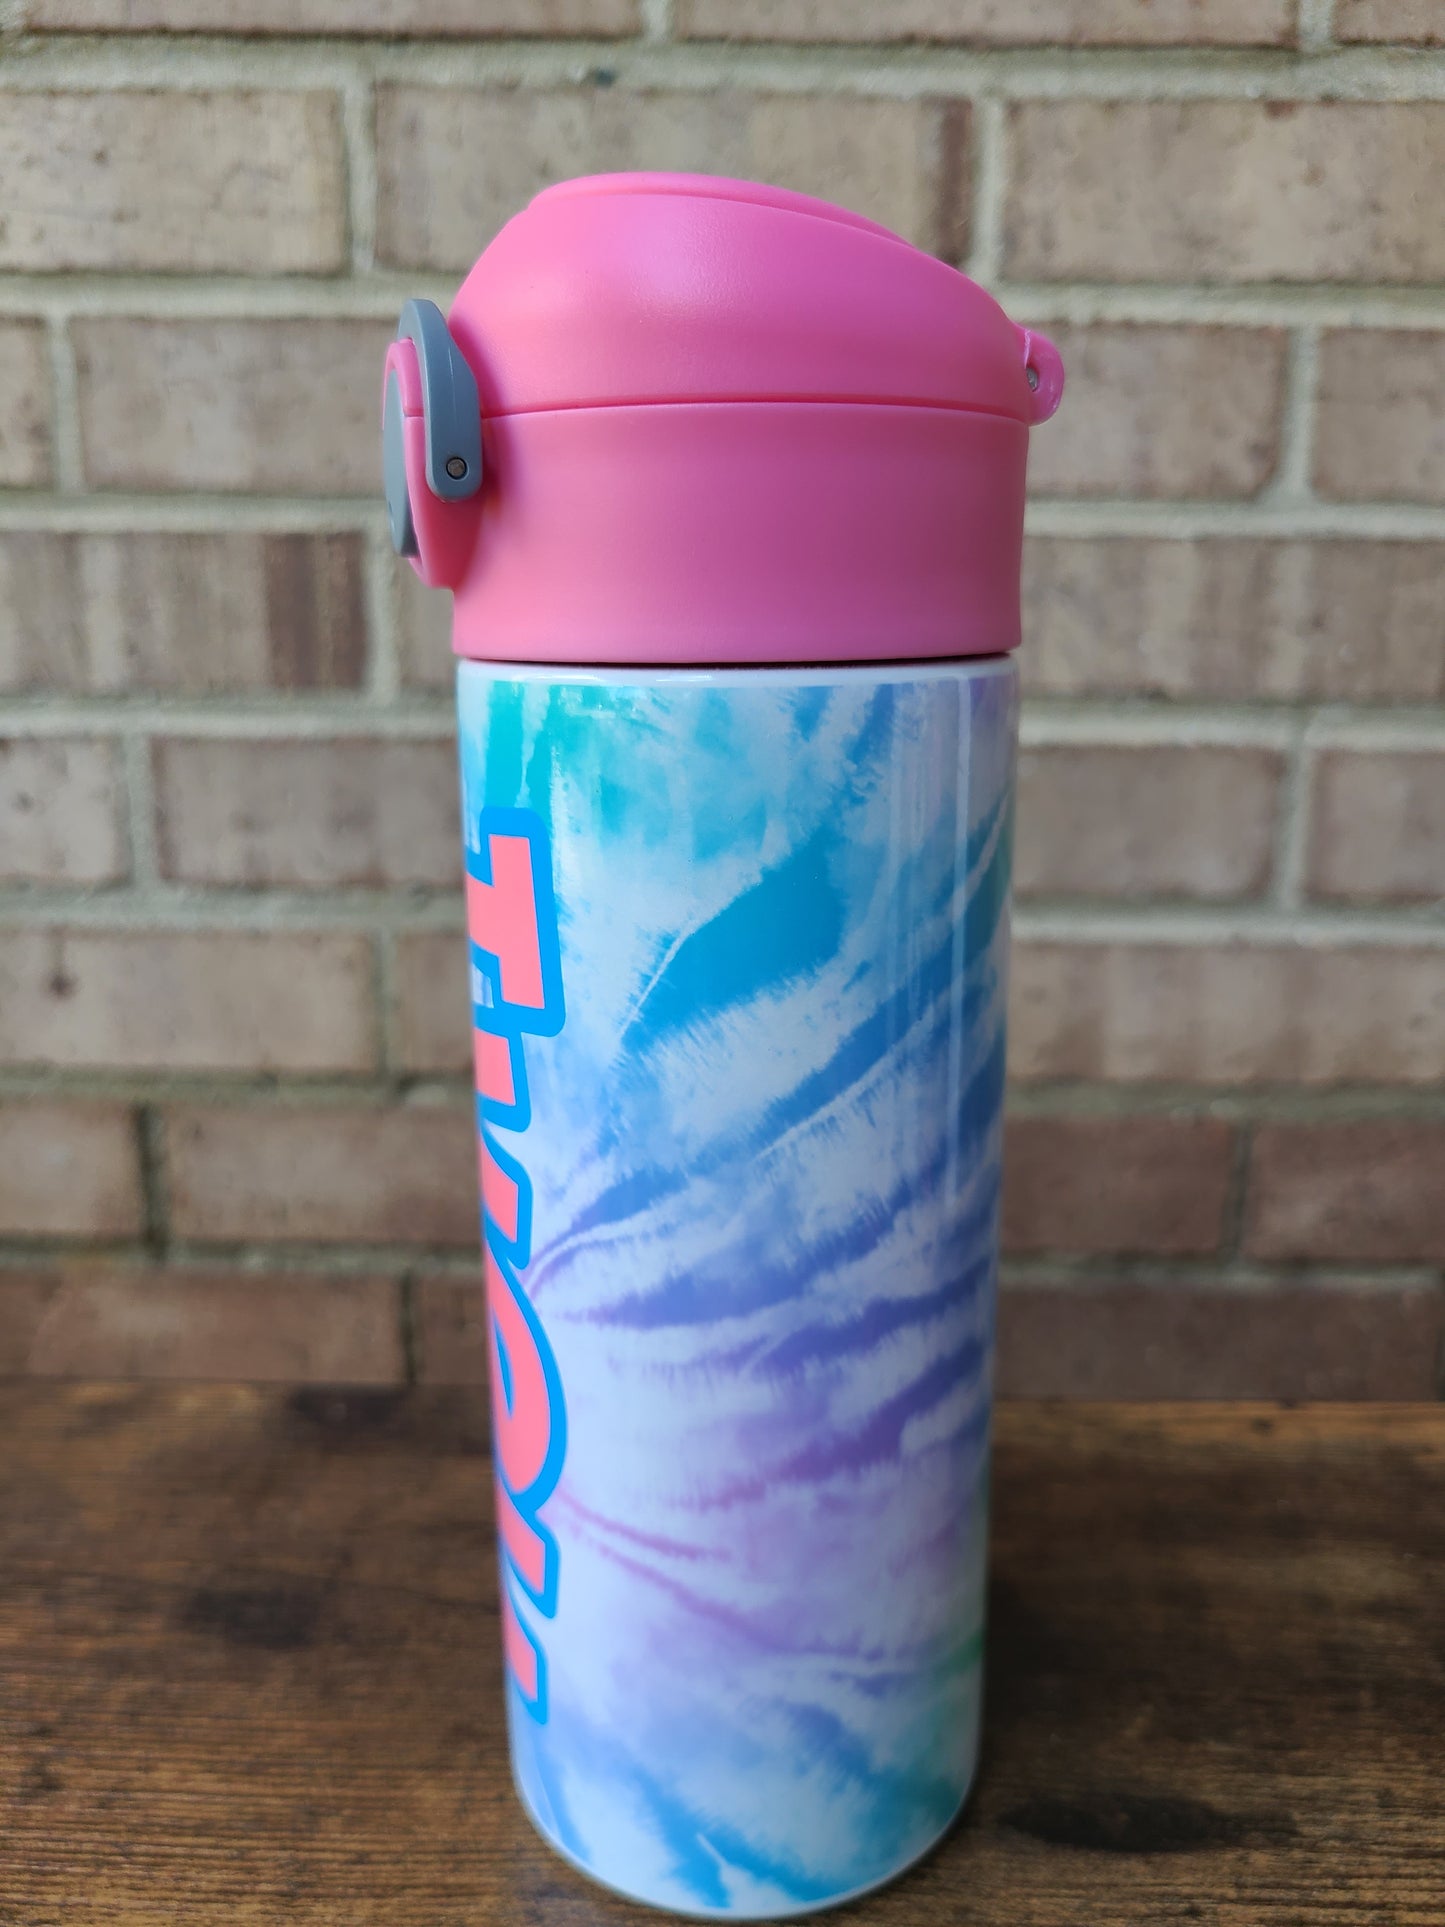 Colorful Tie Dye Flip Top Water Bottle - Personalized